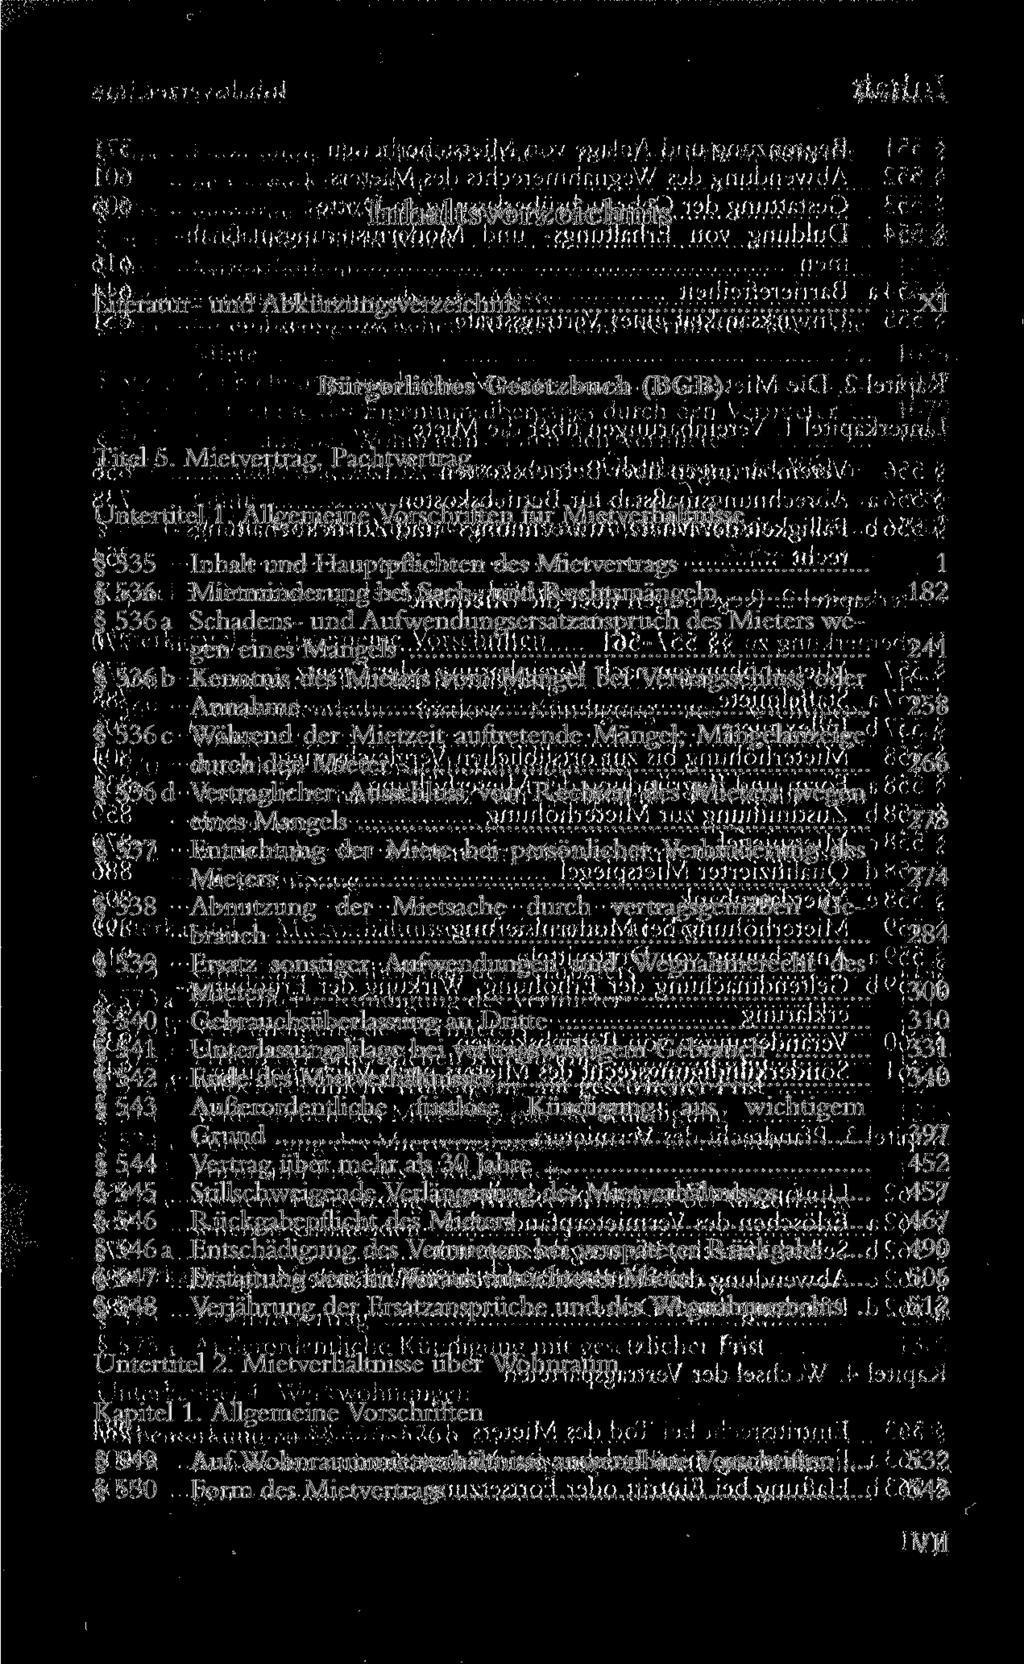 Literatur- und Abkürzungsverzeichnis XI Bürgerliches Gesetzbuch (BGB) Titel 5. Mietvertrag. Pachtvertrag Untertitel 1.